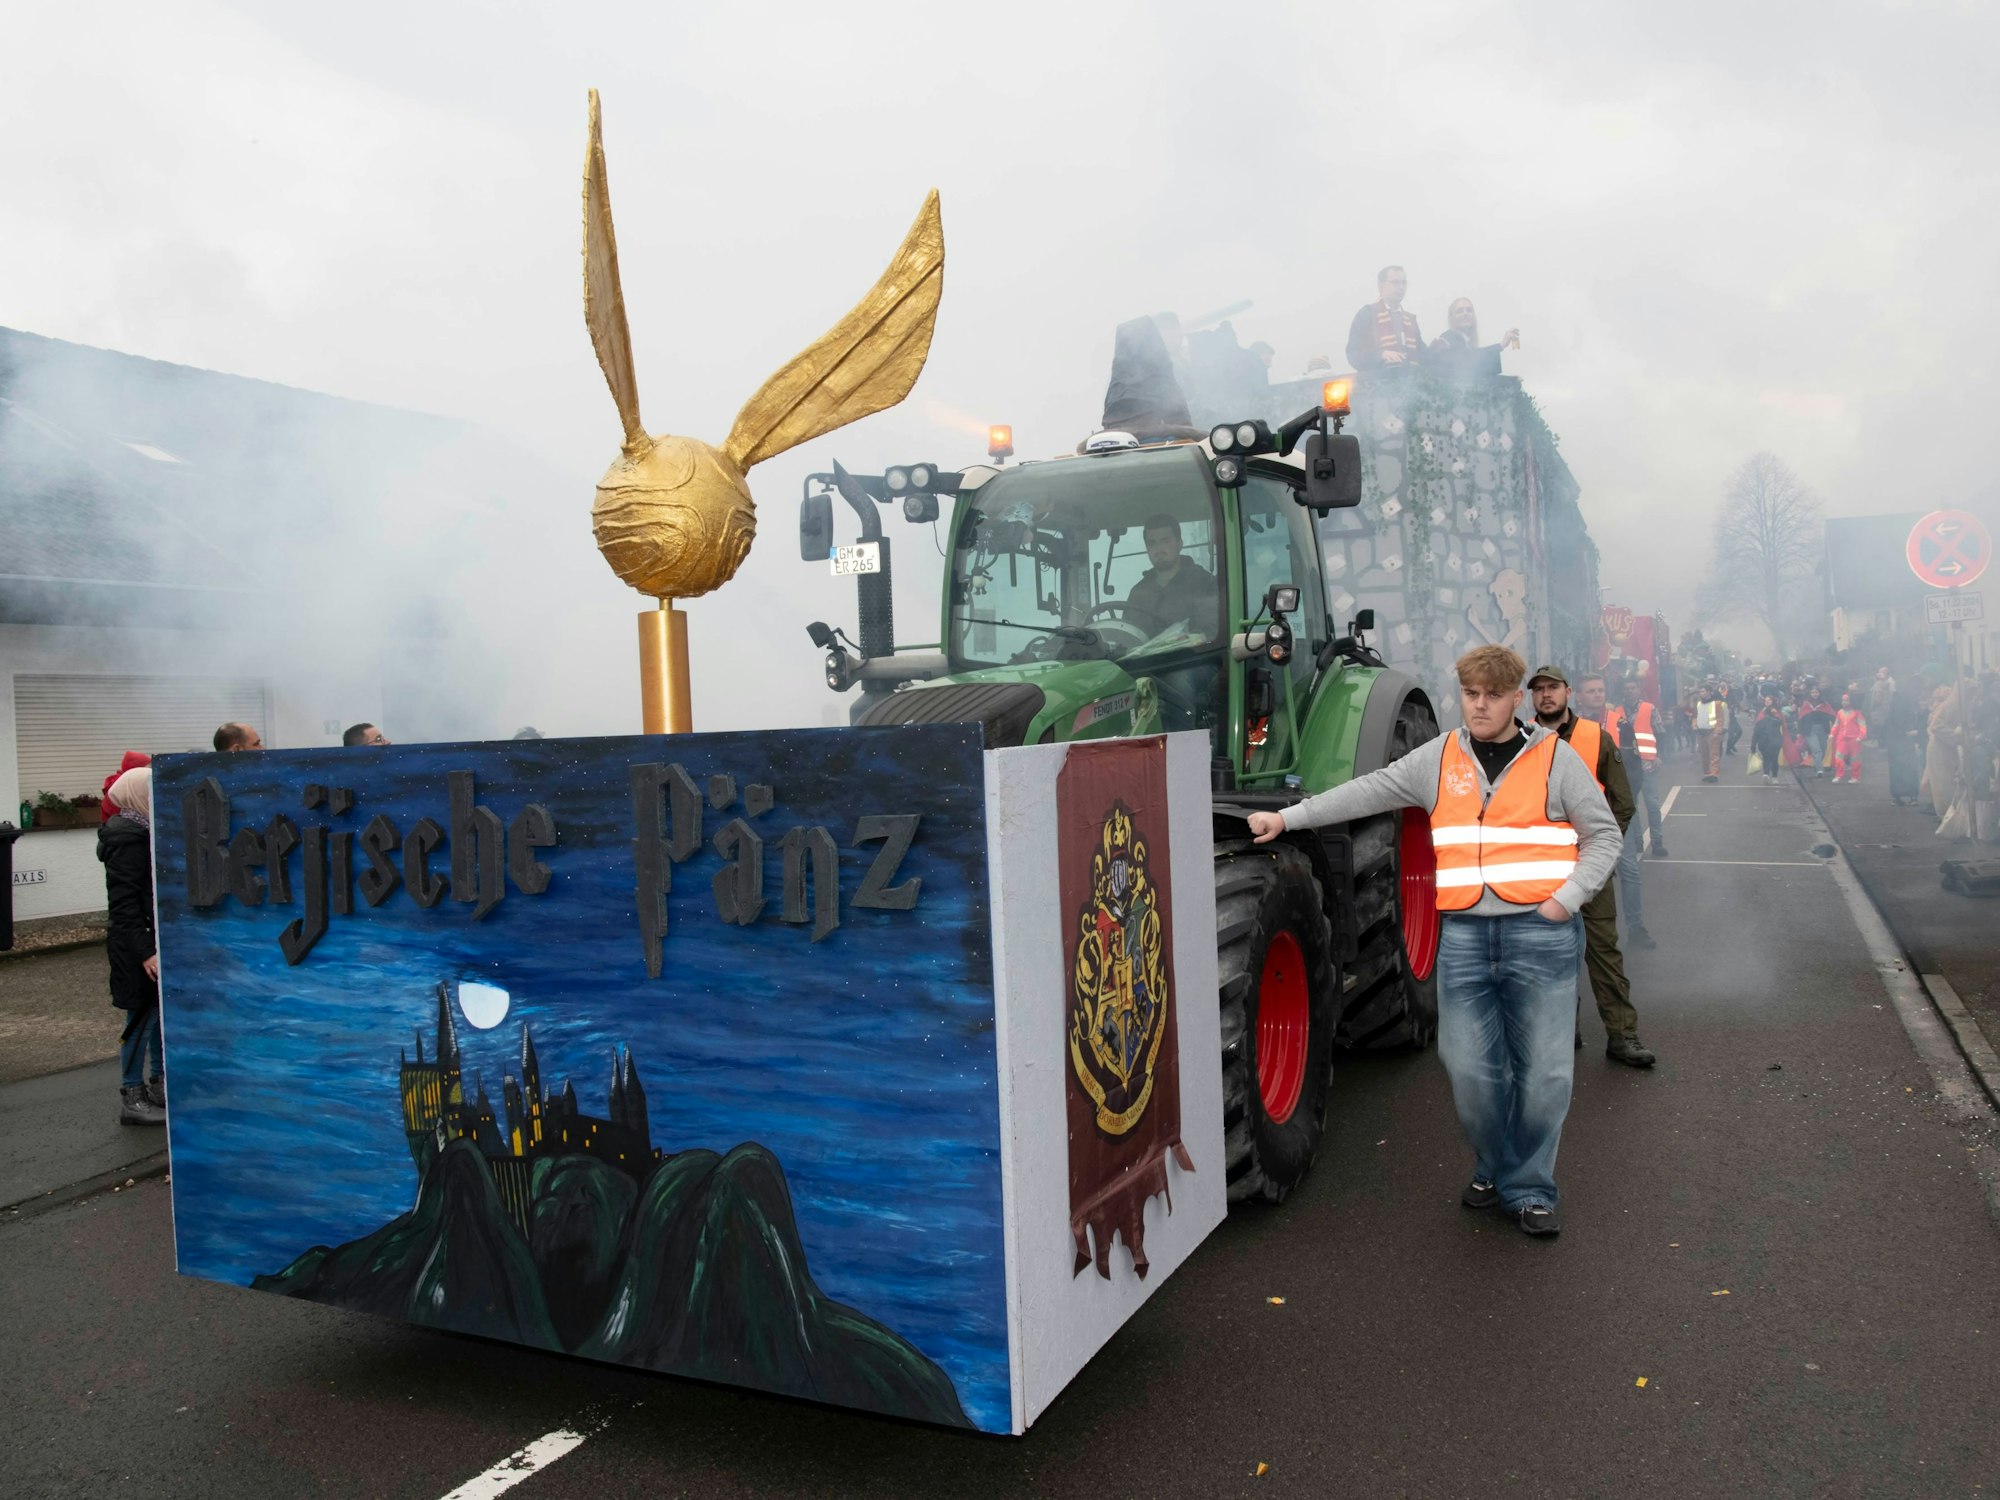 Ein Karnevals-Mottowagen zum Thema Hogwarts, mit einem goldenen Schnatz vorne auf dem Wagen.